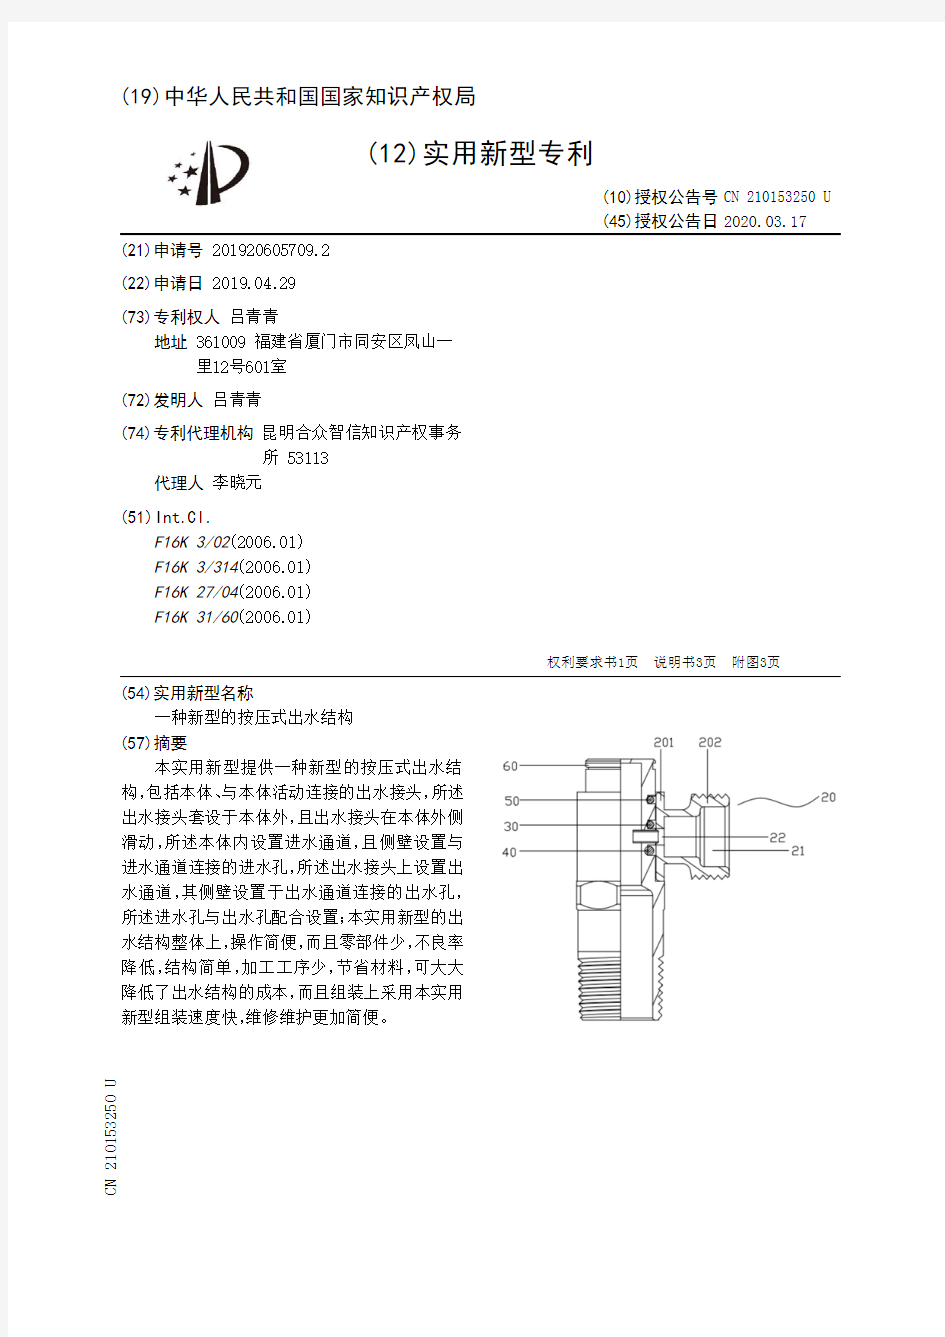 【CN210153250U】一种新型的按压式出水结构【专利】